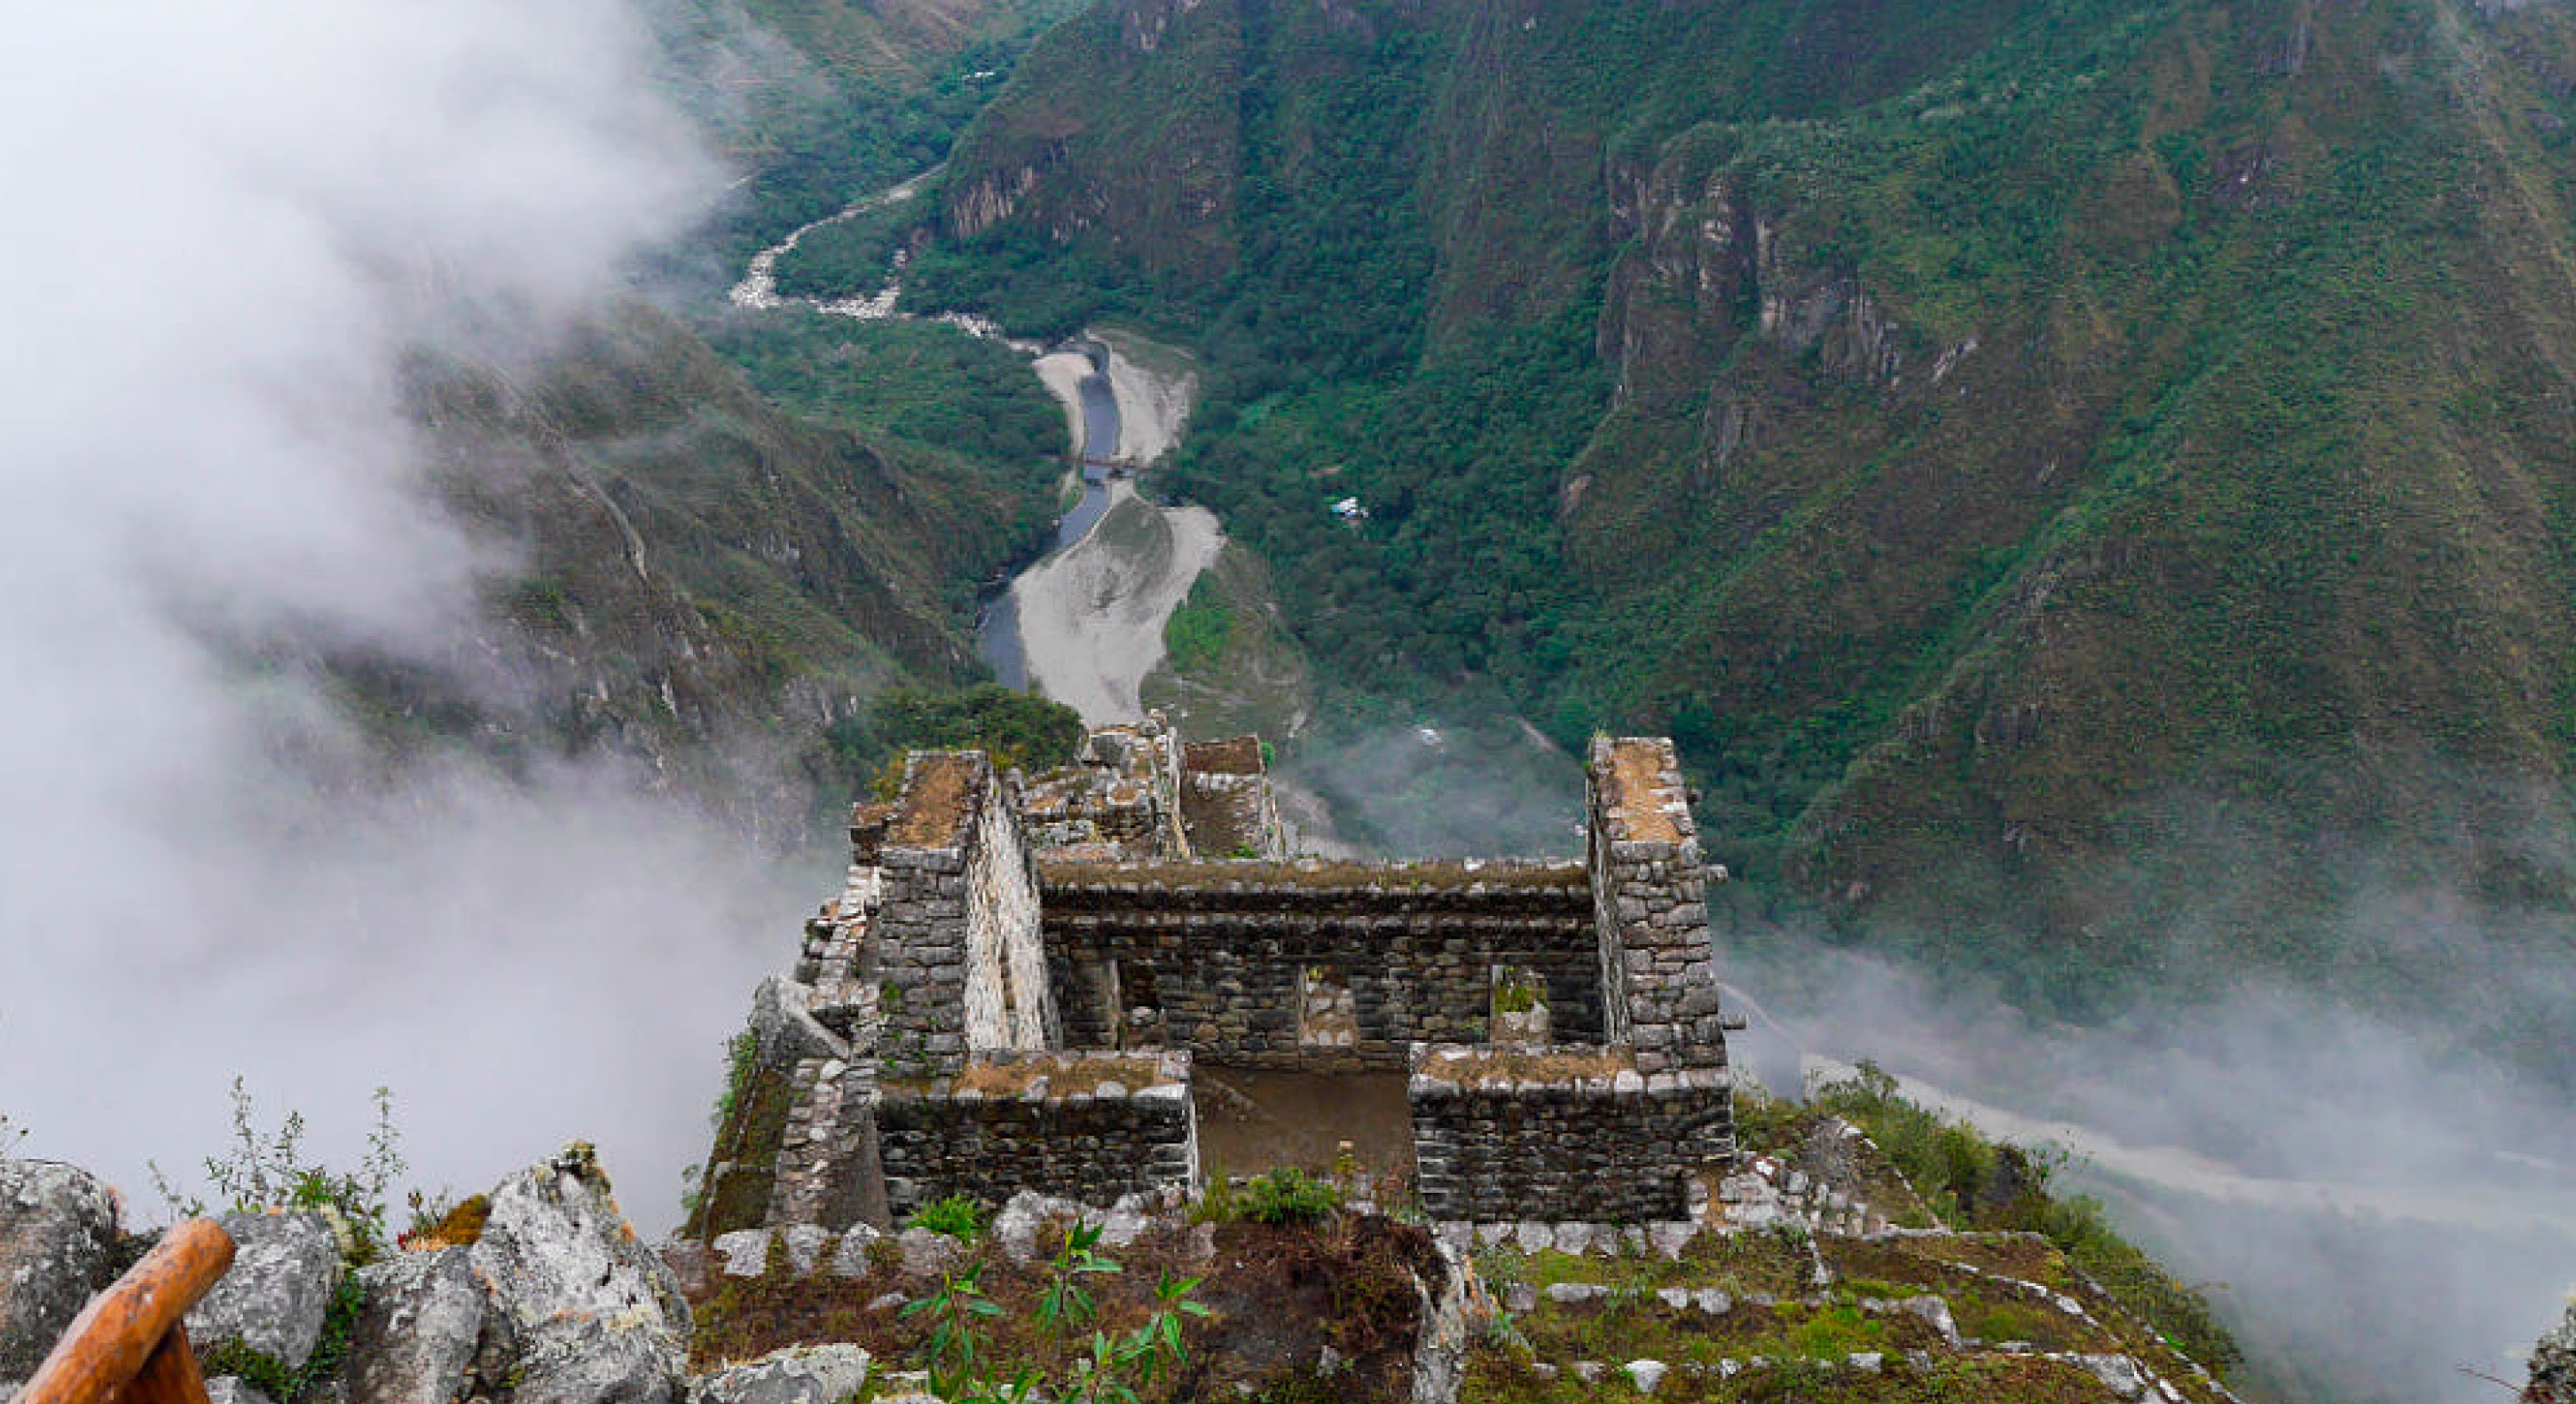 Who can climb the Huayna Picchu?